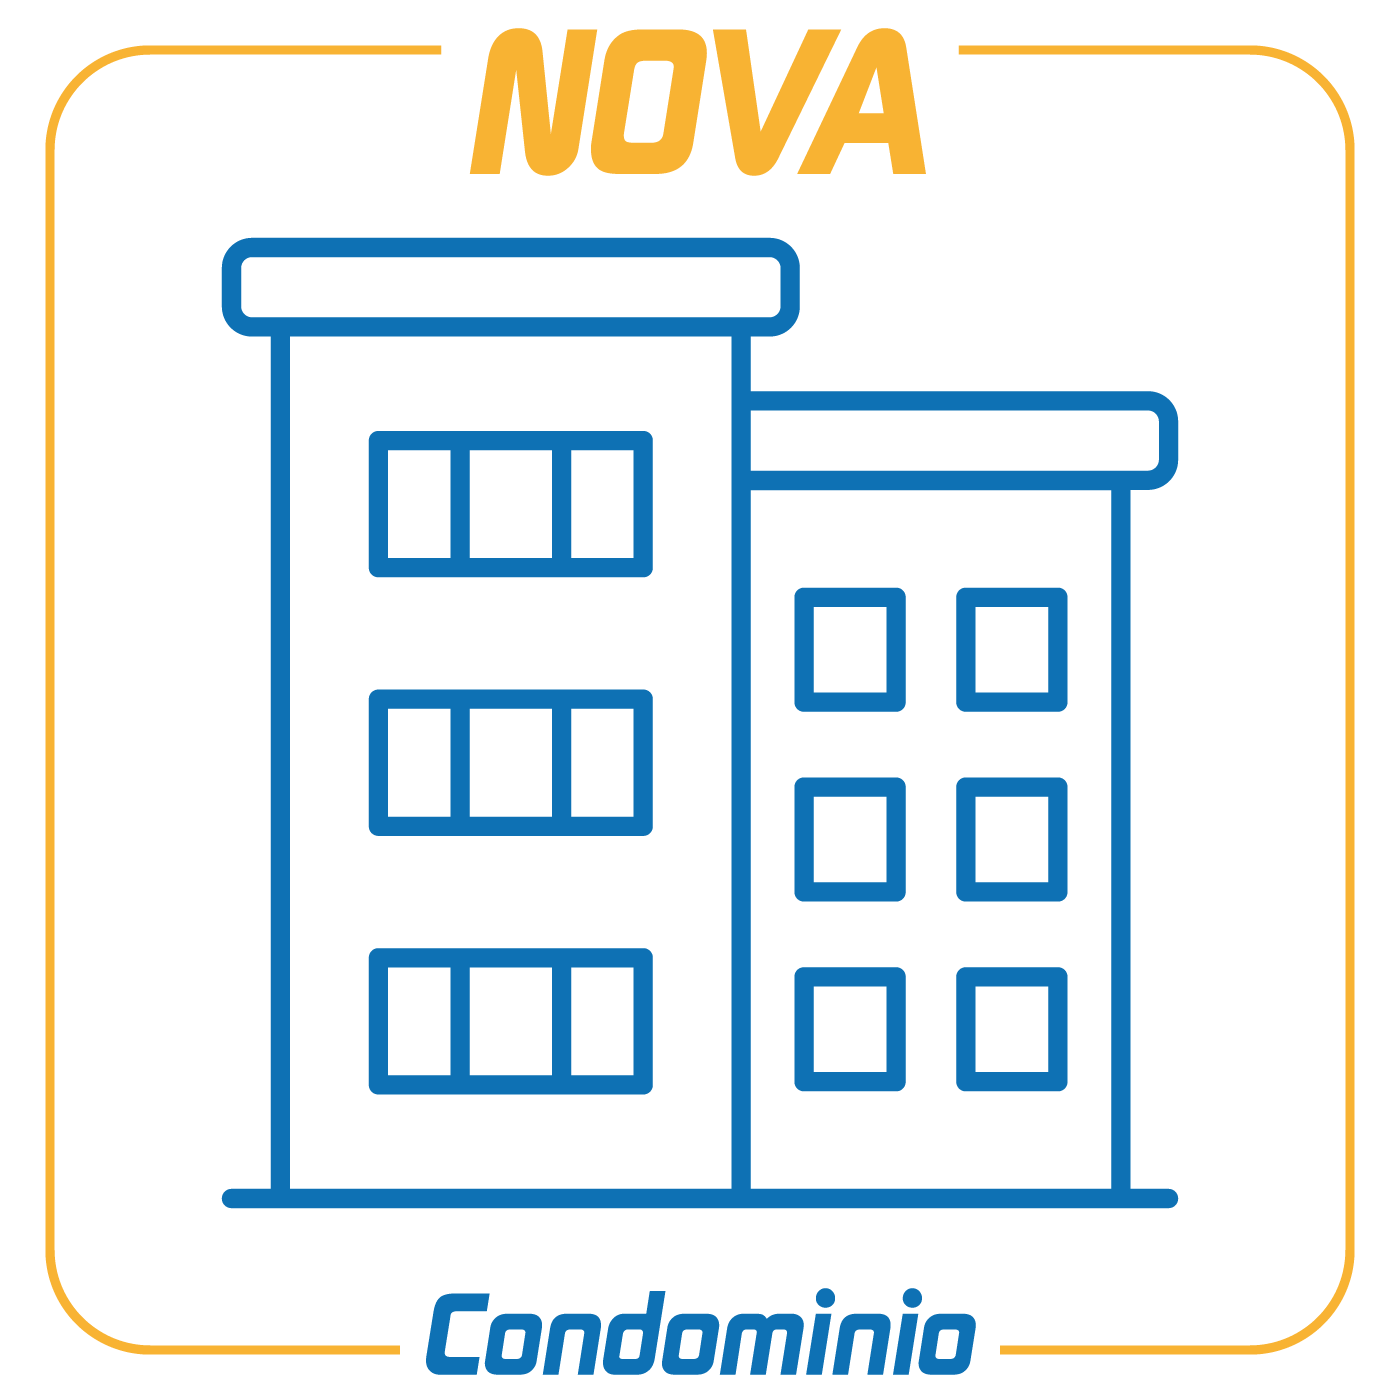 NOVA CondominioSoftware per la completa gestione condominiale (contabilità, adempimenti fiscali, gestione assemblee, sito web ecc.). Disponibile anche in versione Client/Server.